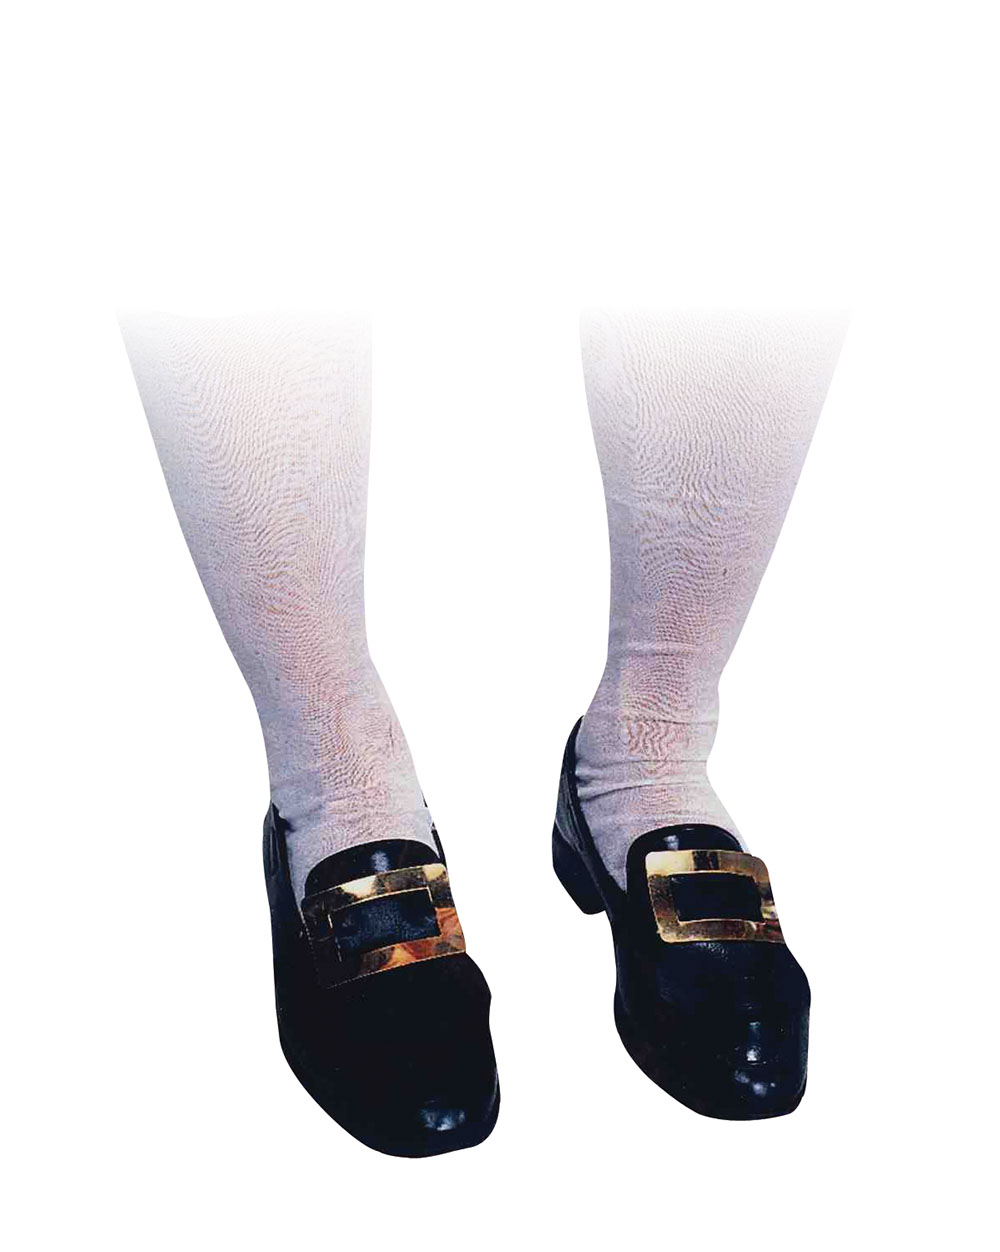 Adult White Knee Socks